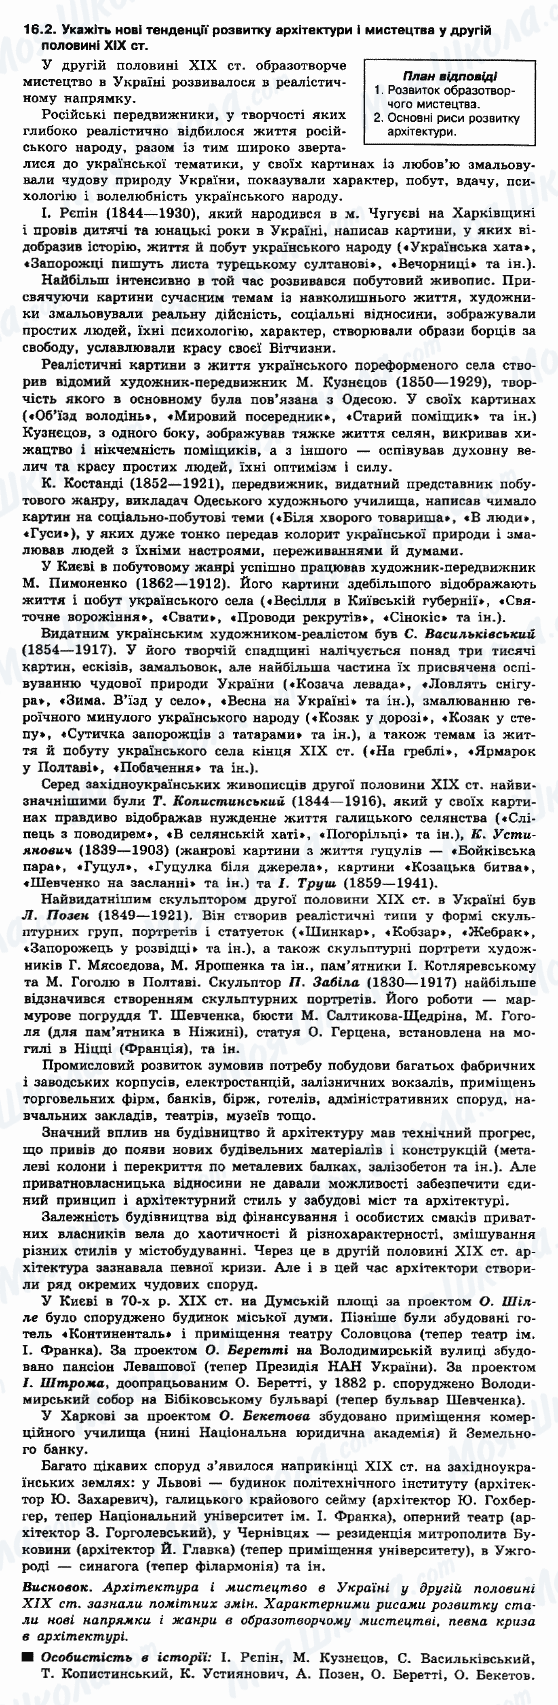 ДПА Історія України 9 клас сторінка 16.2